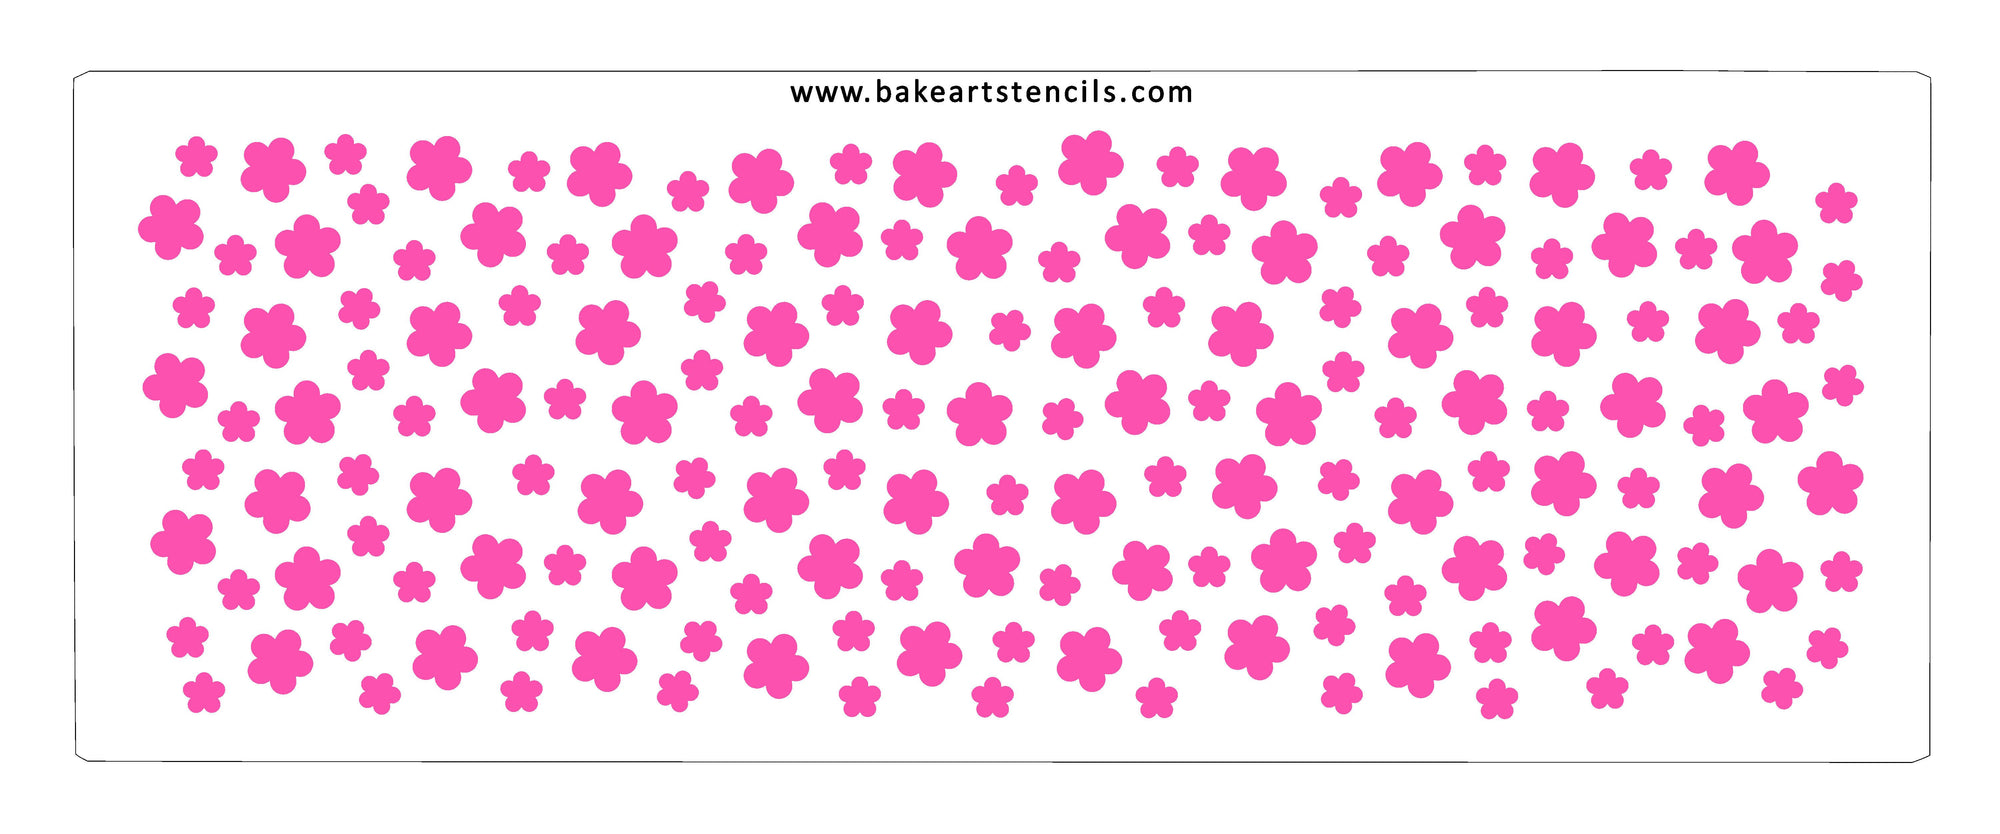 Field of Flowers Cake Stencil bakeartstencils